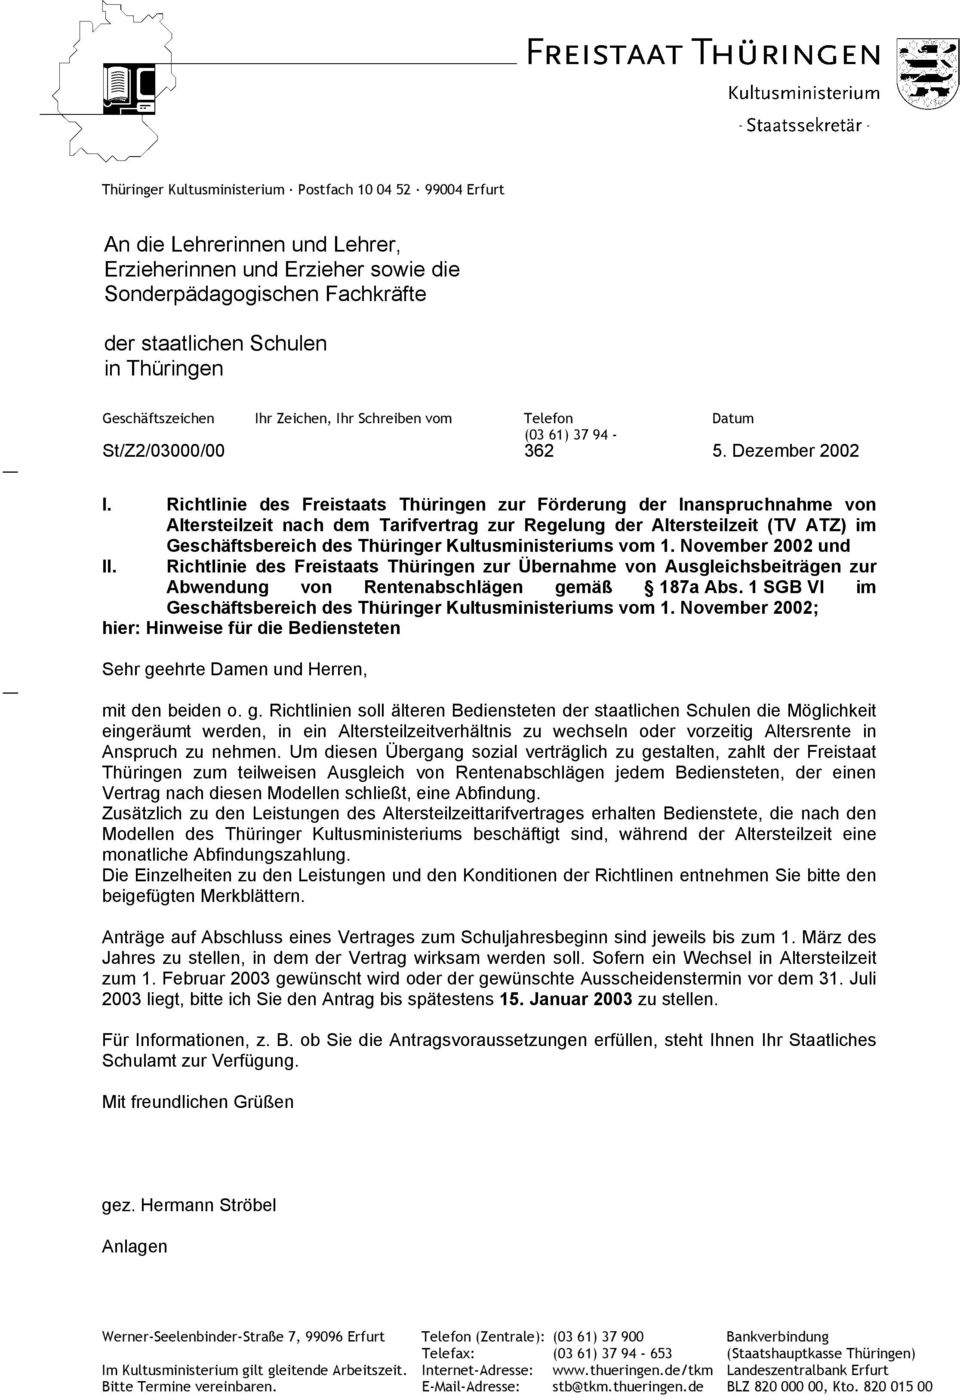 Richtlinie des Freistaats Thüringen zur Förderung der Inanspruchnahme von Altersteilzeit nach dem Tarifvertrag zur Regelung der Altersteilzeit (TV ATZ) im Geschäftsbereich des Thüringer